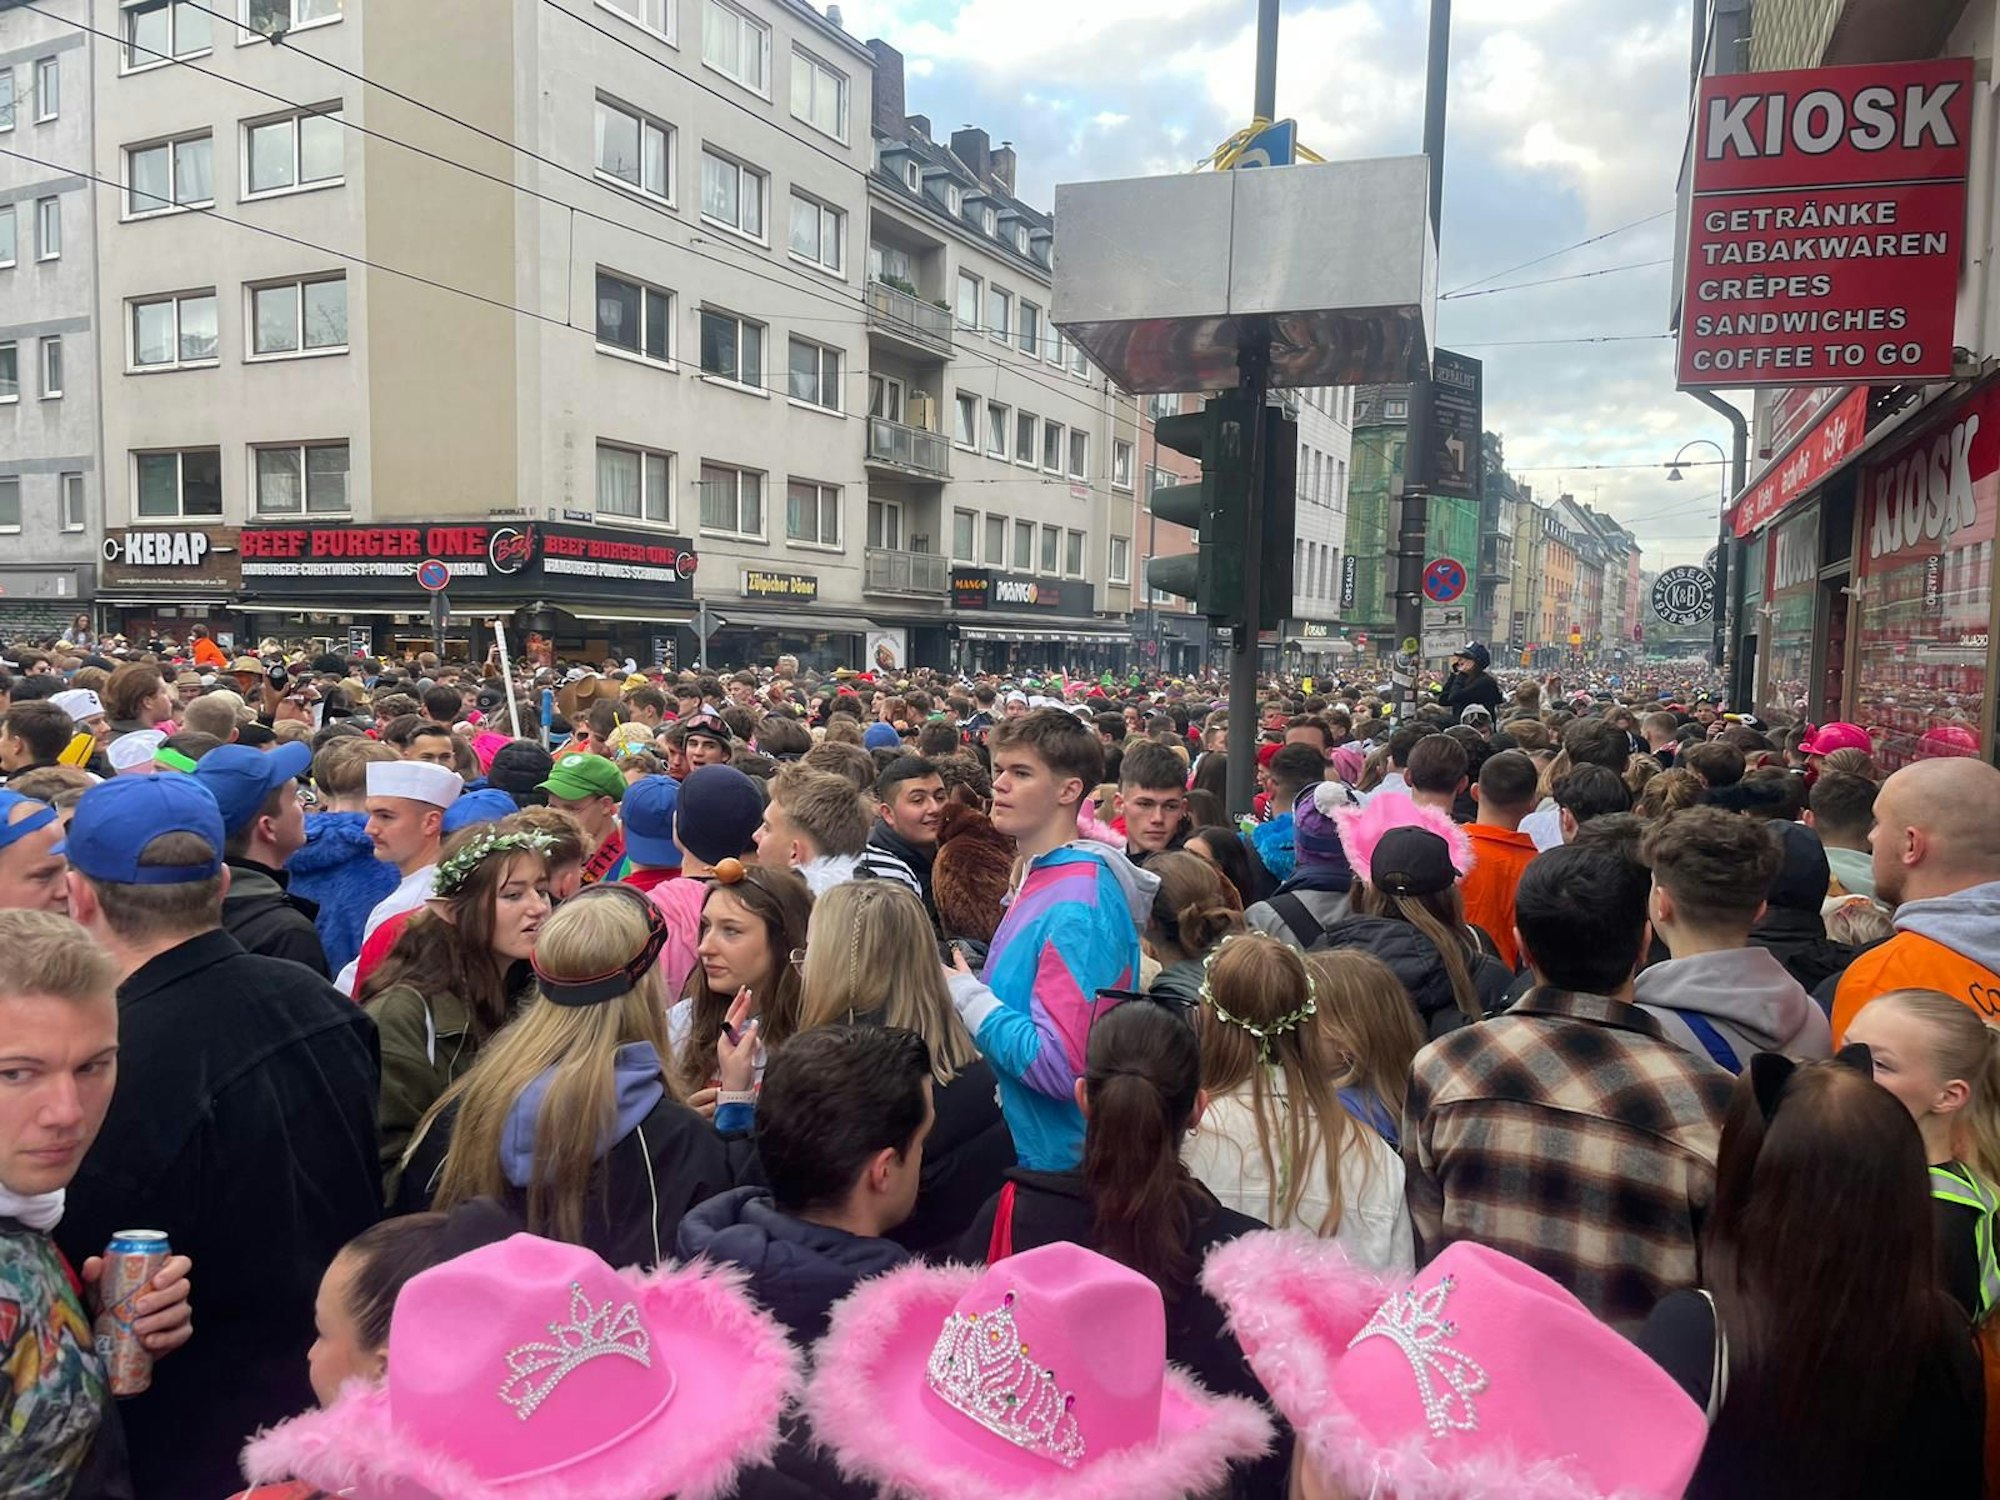 Viele feiernde Menschen in Kostümen auf der Zülpicher Straße.